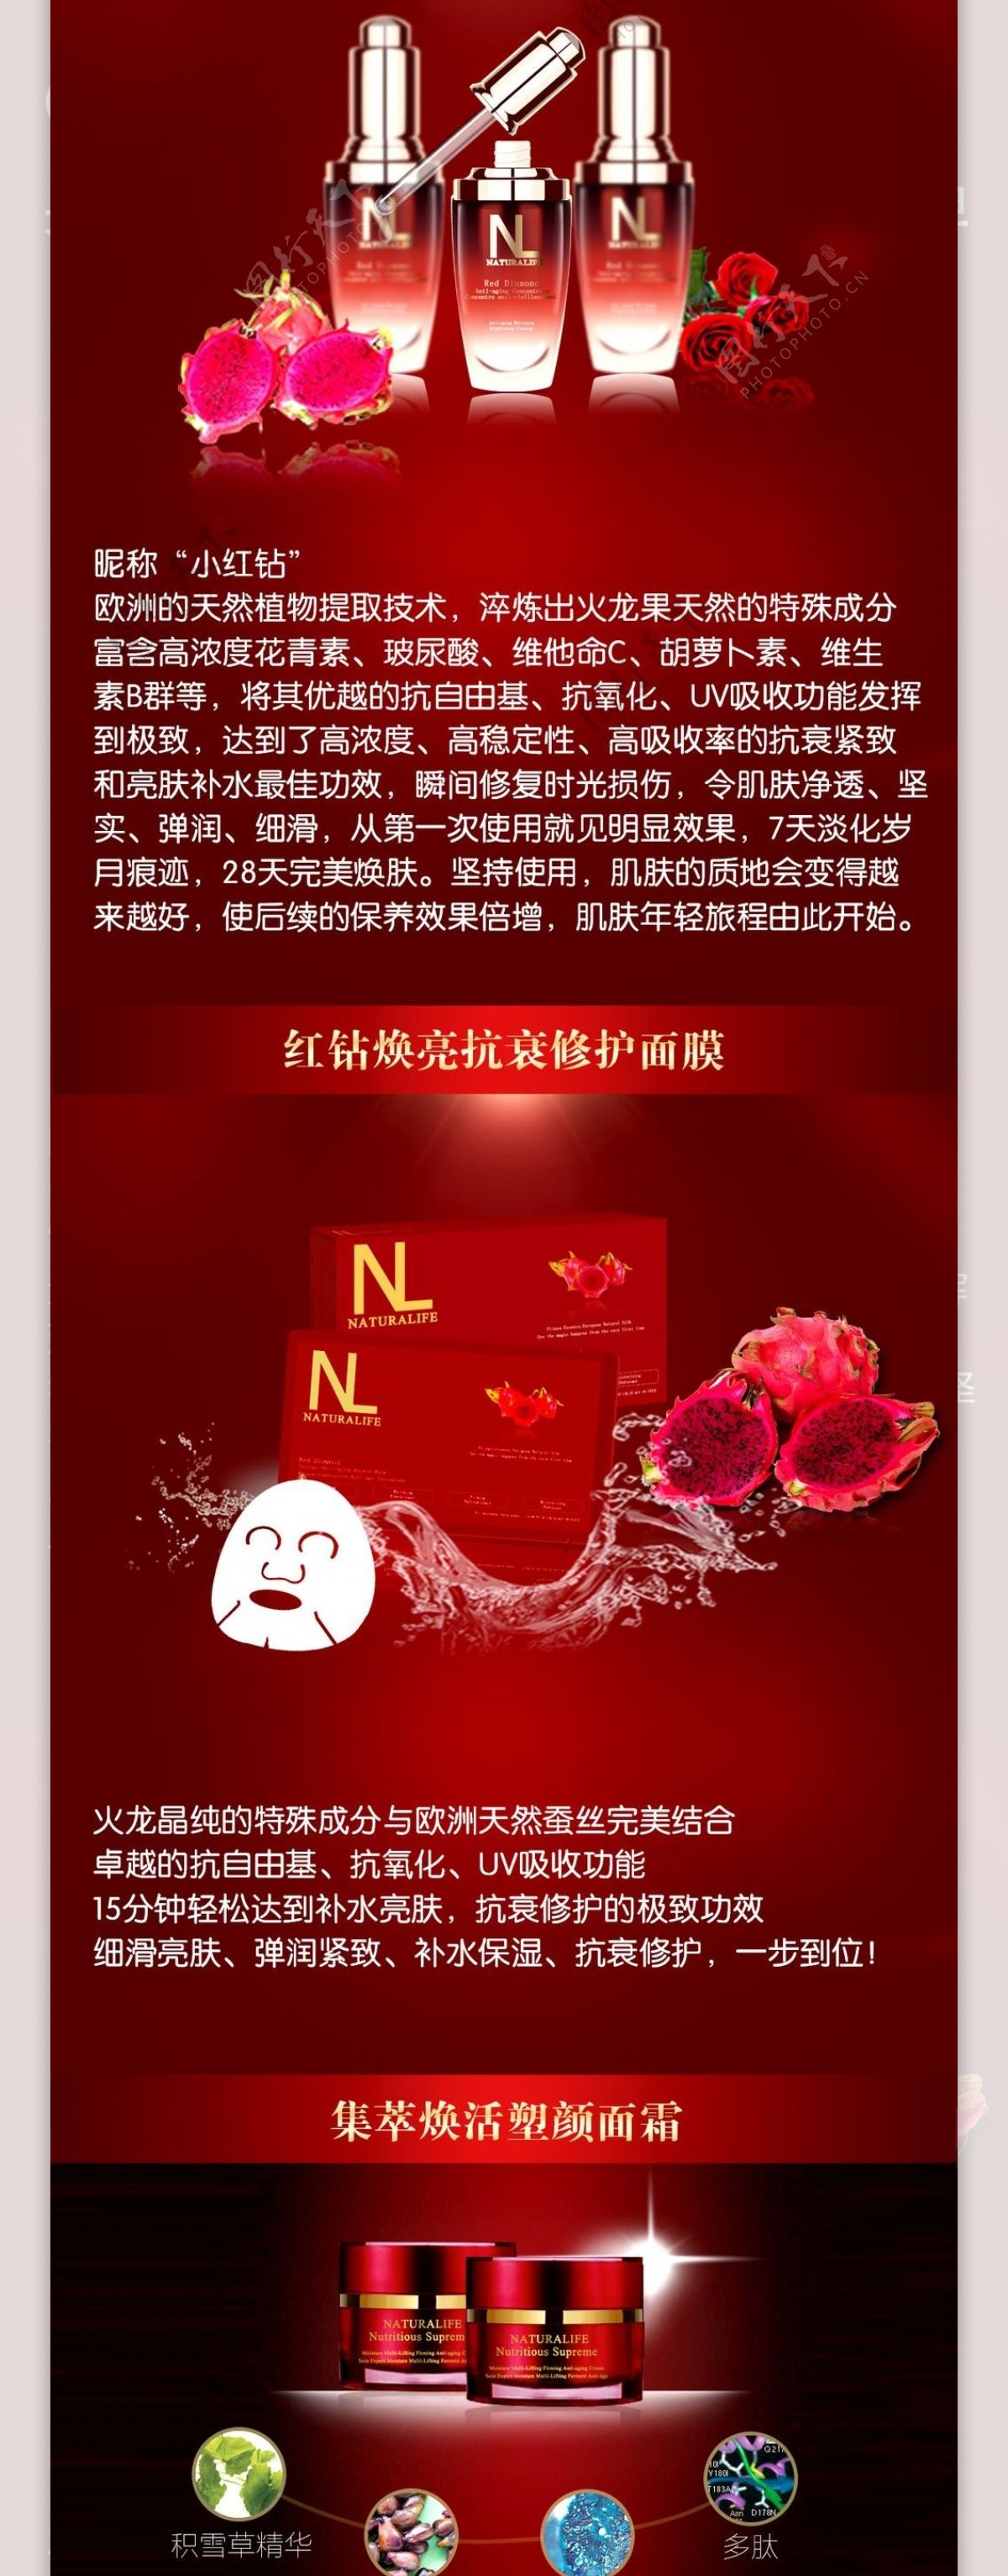 越美NL荣登CCTV央视网商城海报